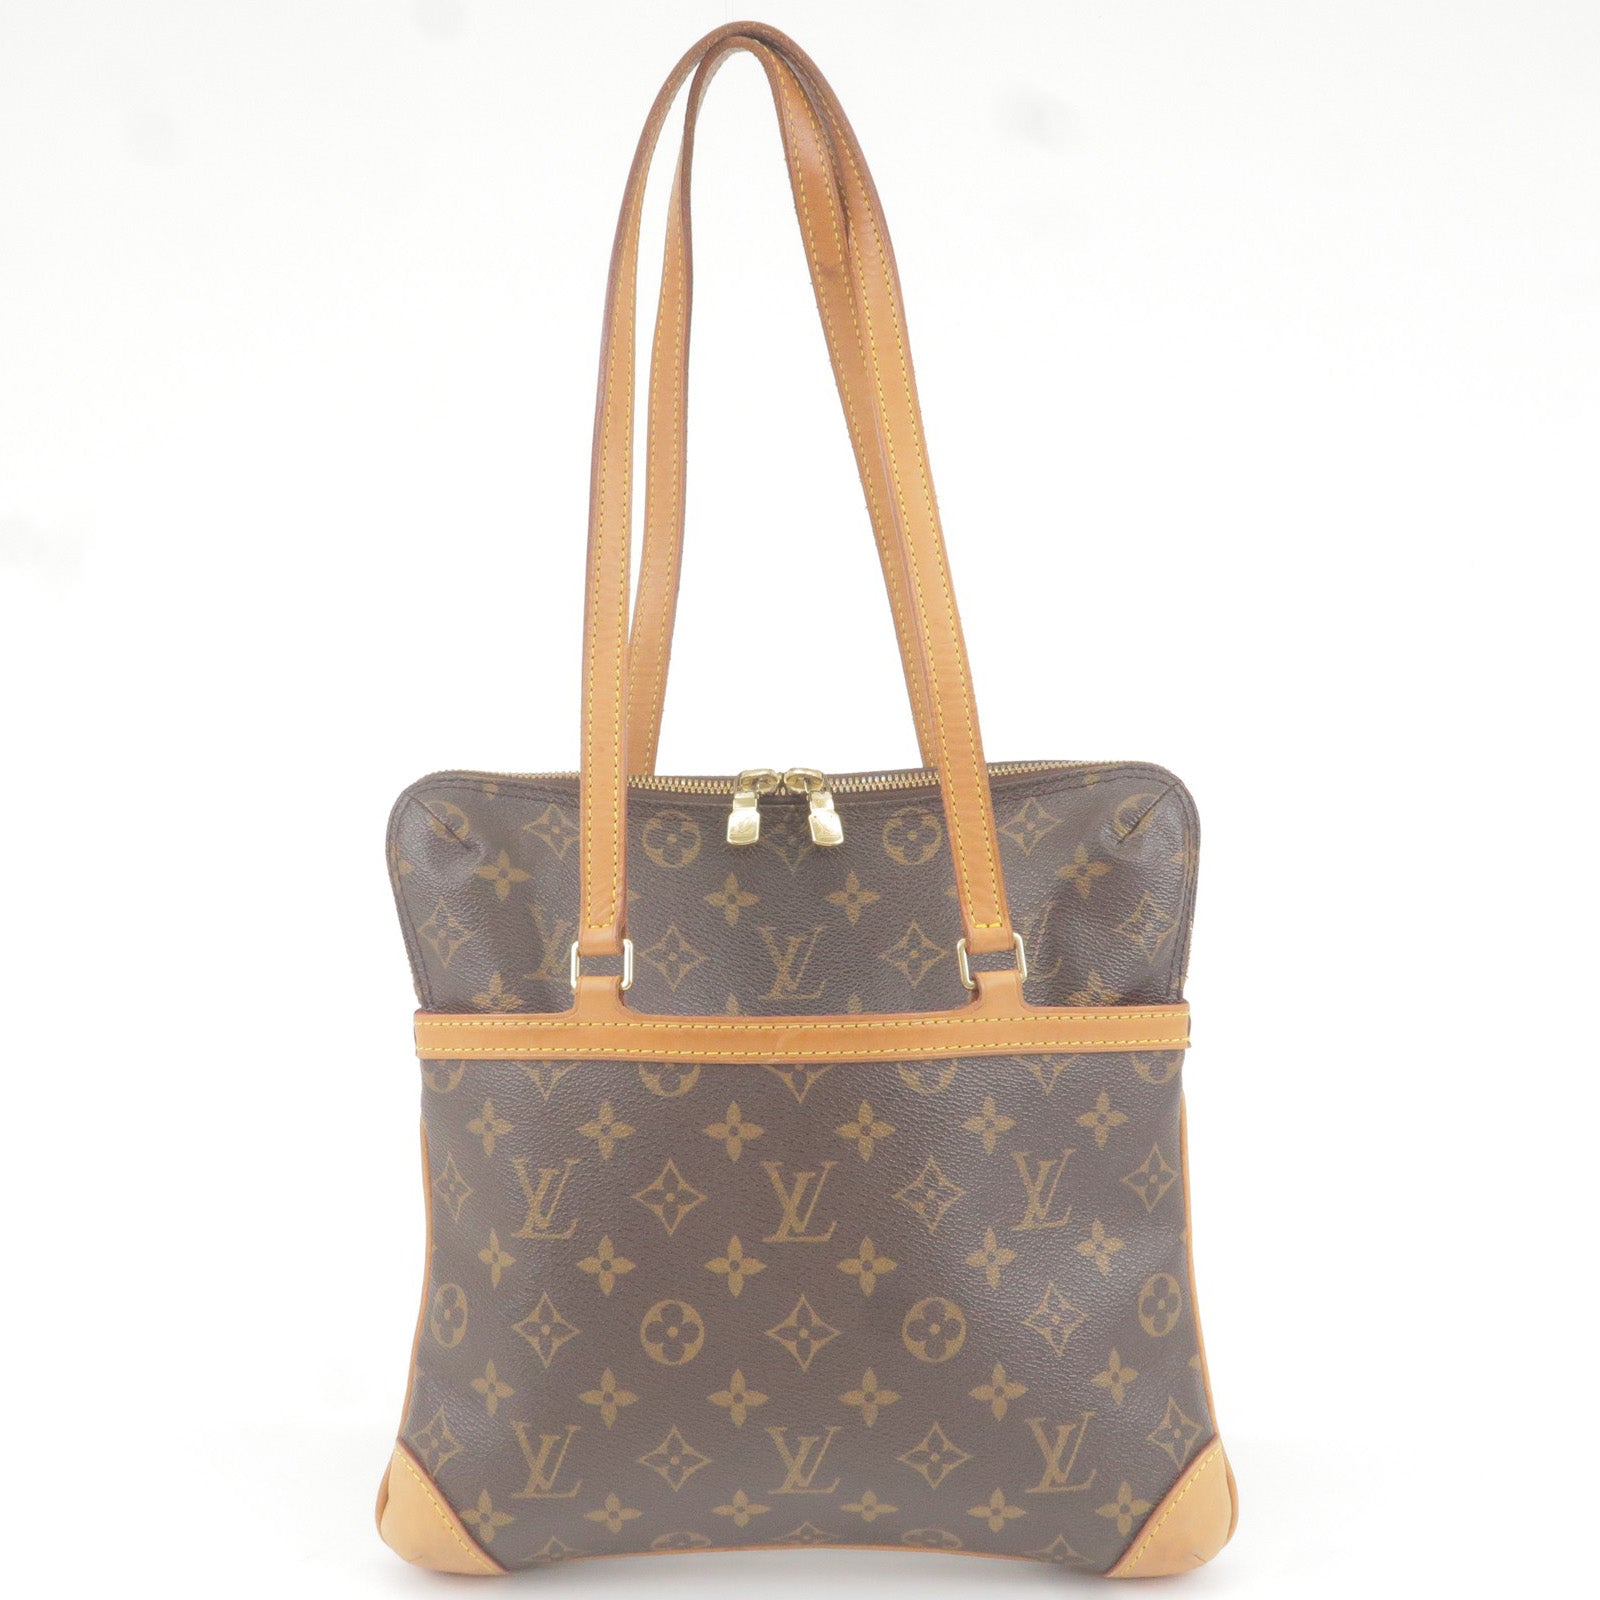 Louis Vuitton, Bags, Louis Vuitton Sac Coussin Gm Authentic